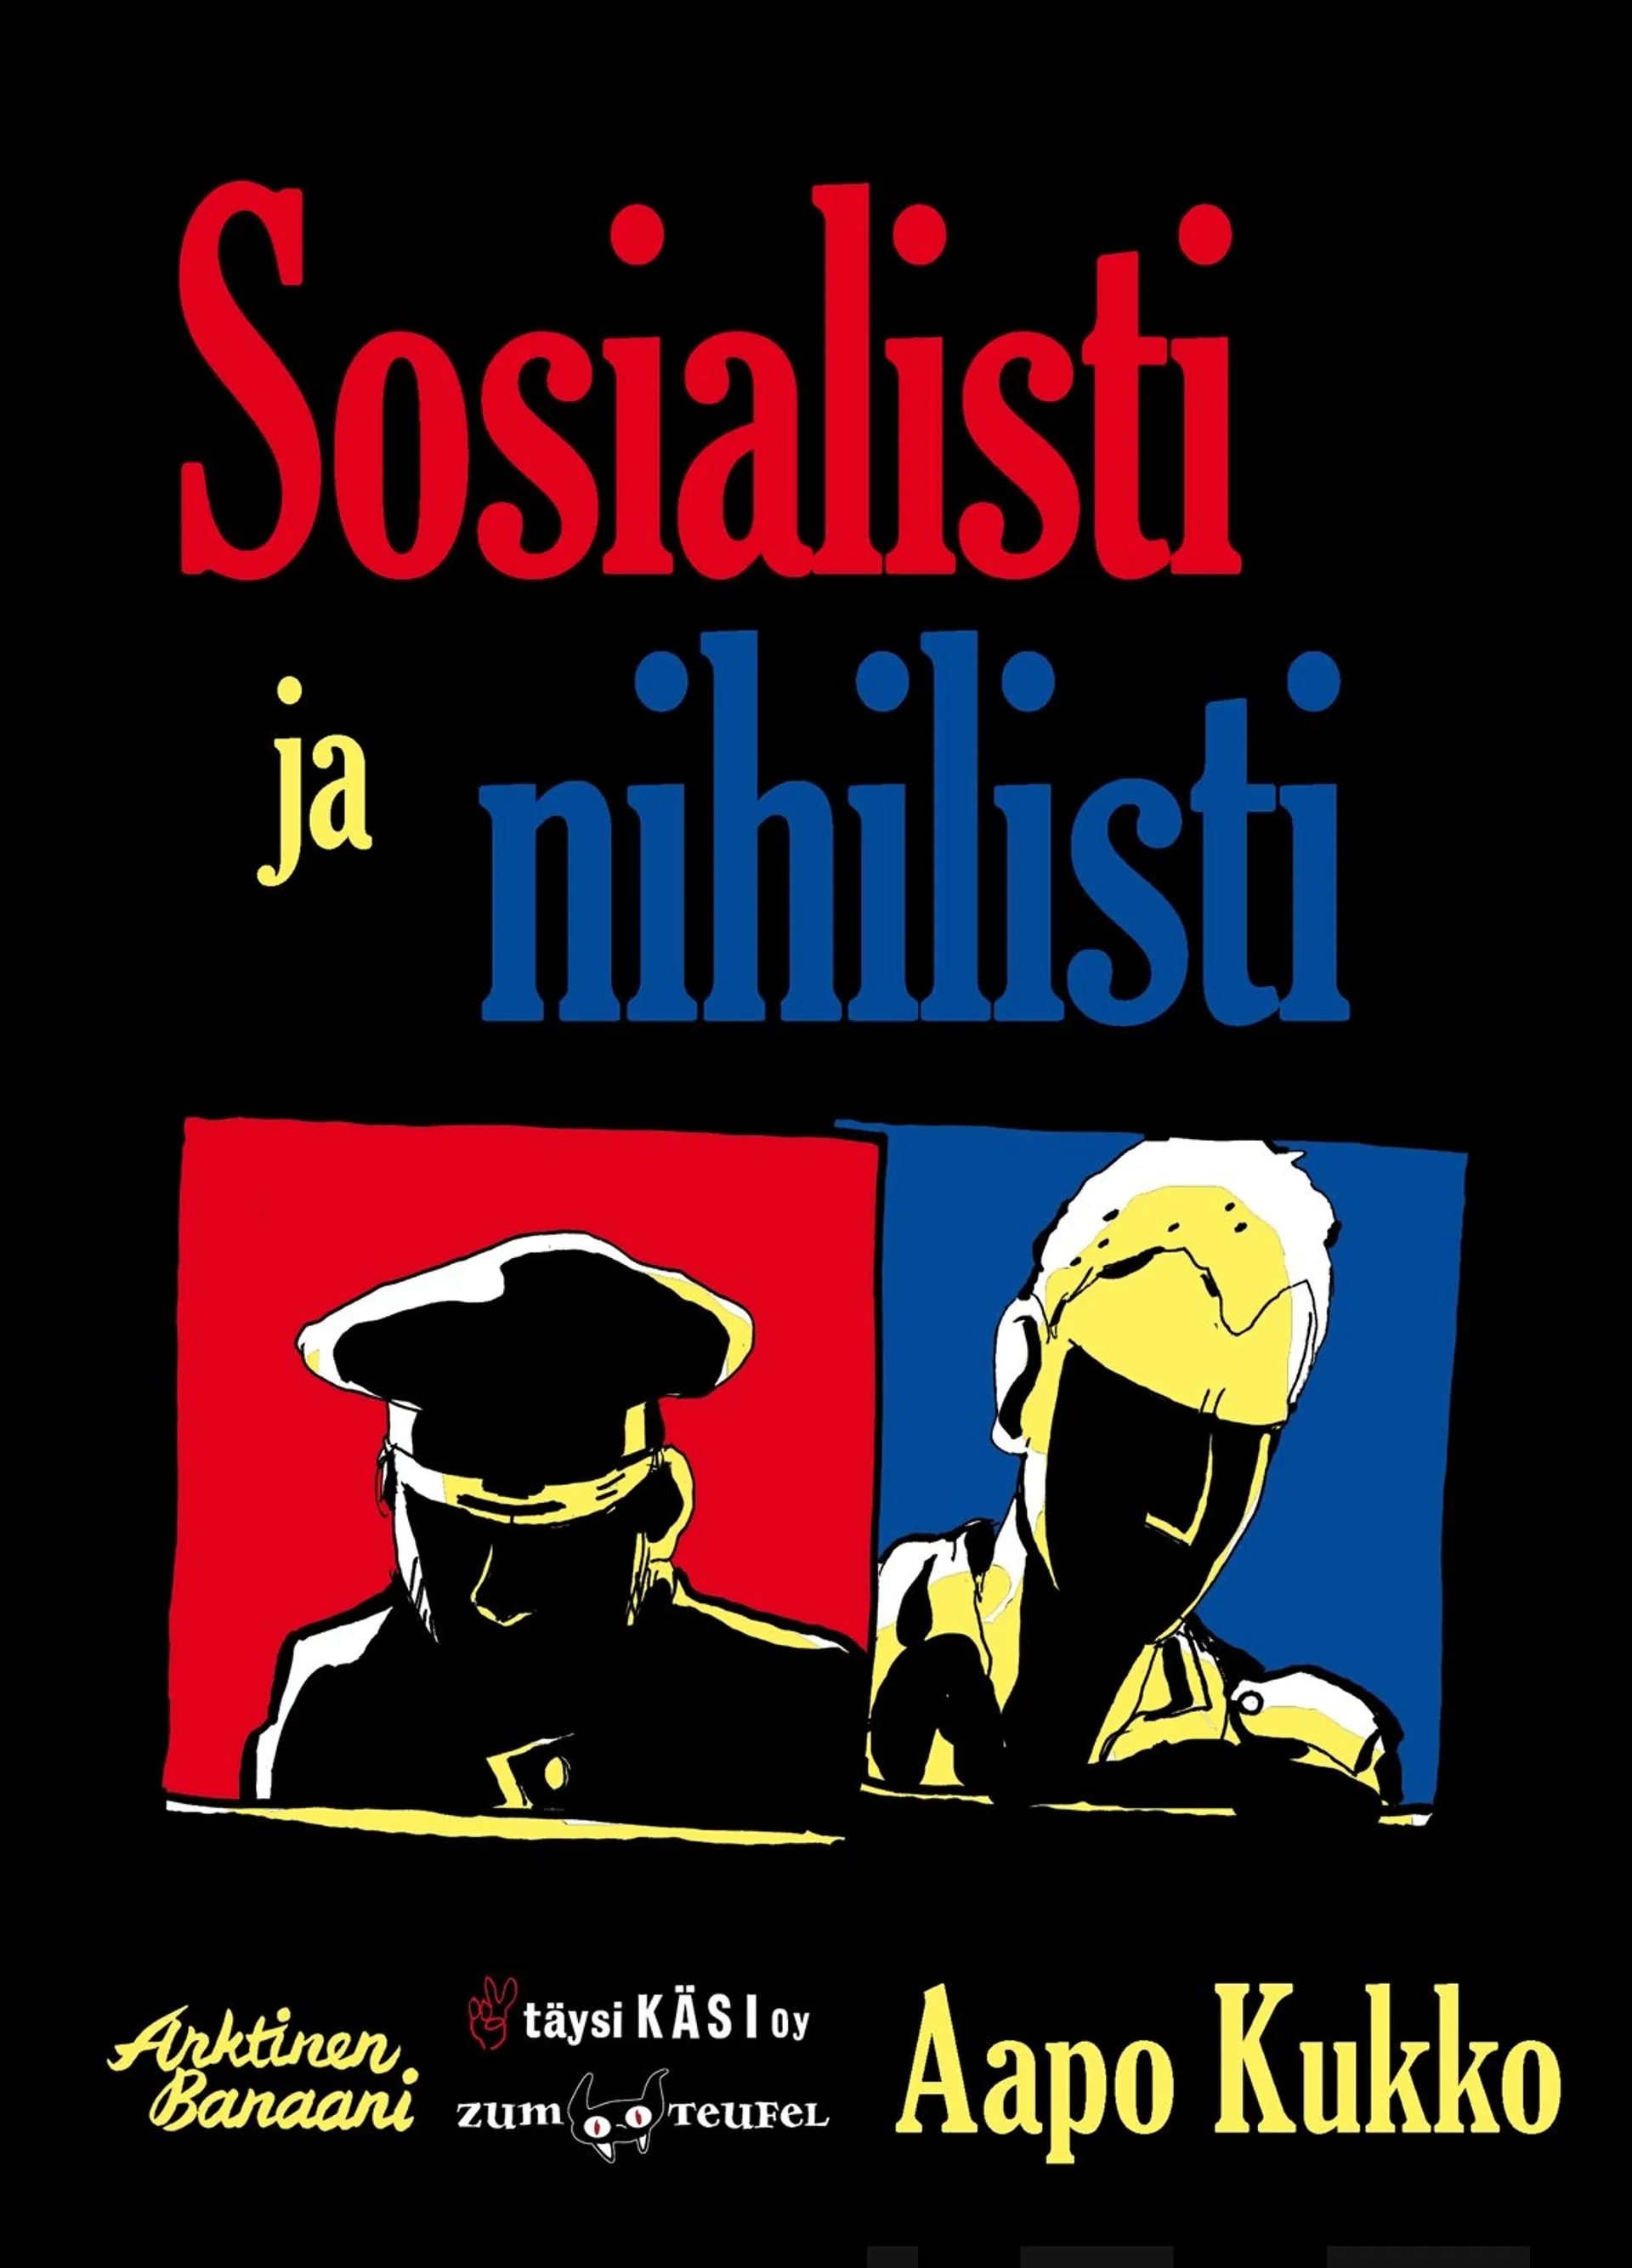 Kukko, Sosialisti ja nihilisti